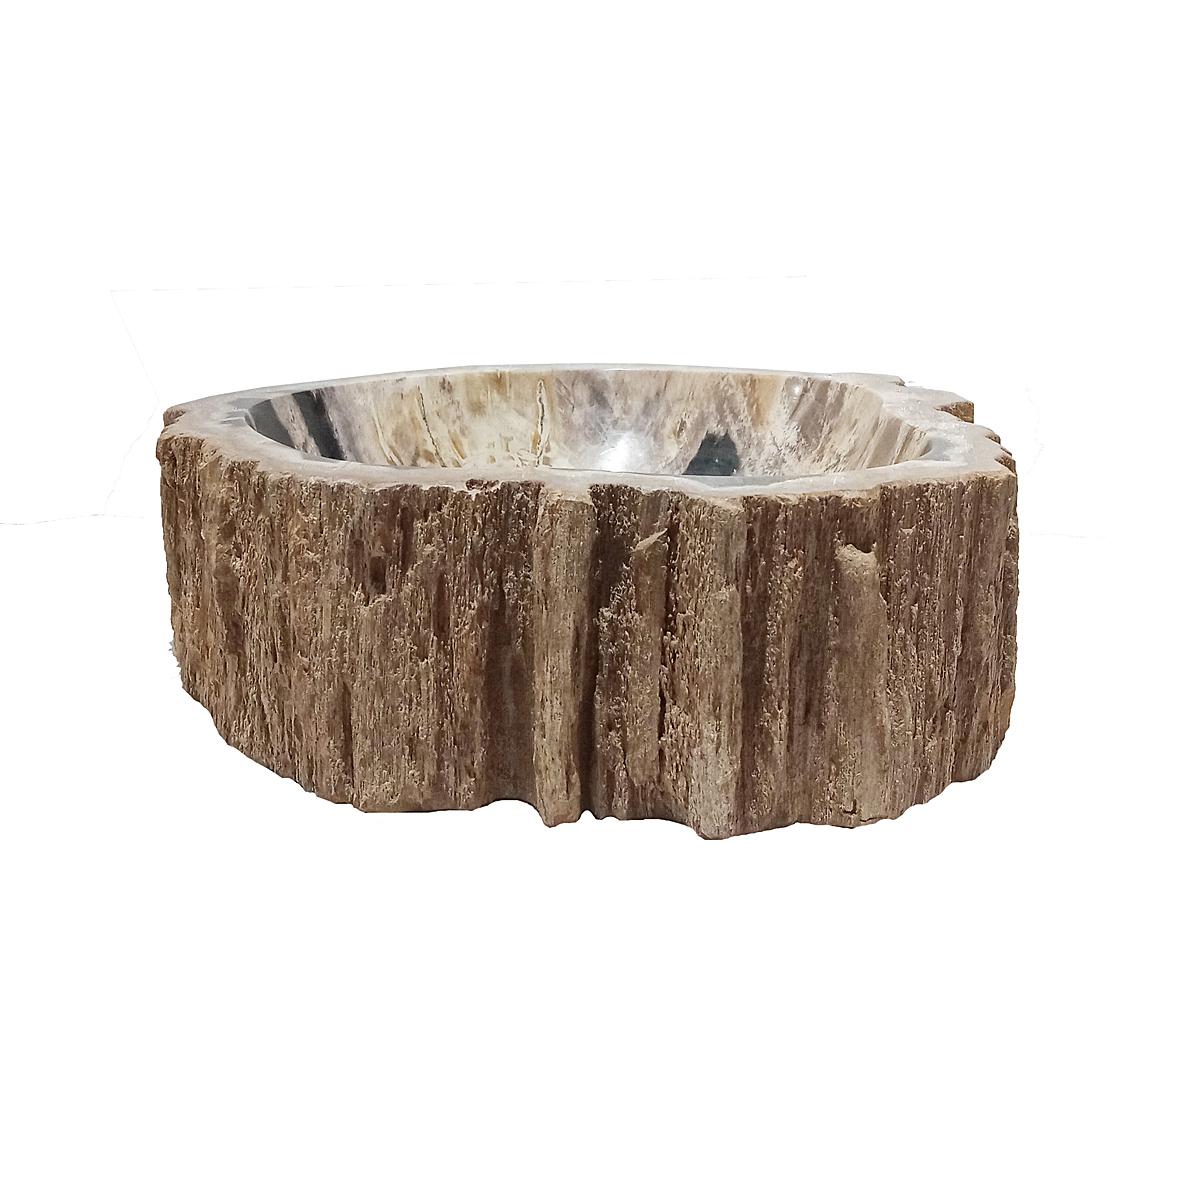 L'un des plus beaux matériaux sur terre est le bois pétrifié indonésien. C'est probablement l'un des bois les plus durables au monde, car il s'agit en fait d'une pierre. Le bois fossile indonésien est vieux de 25 millions d'années, mais il a